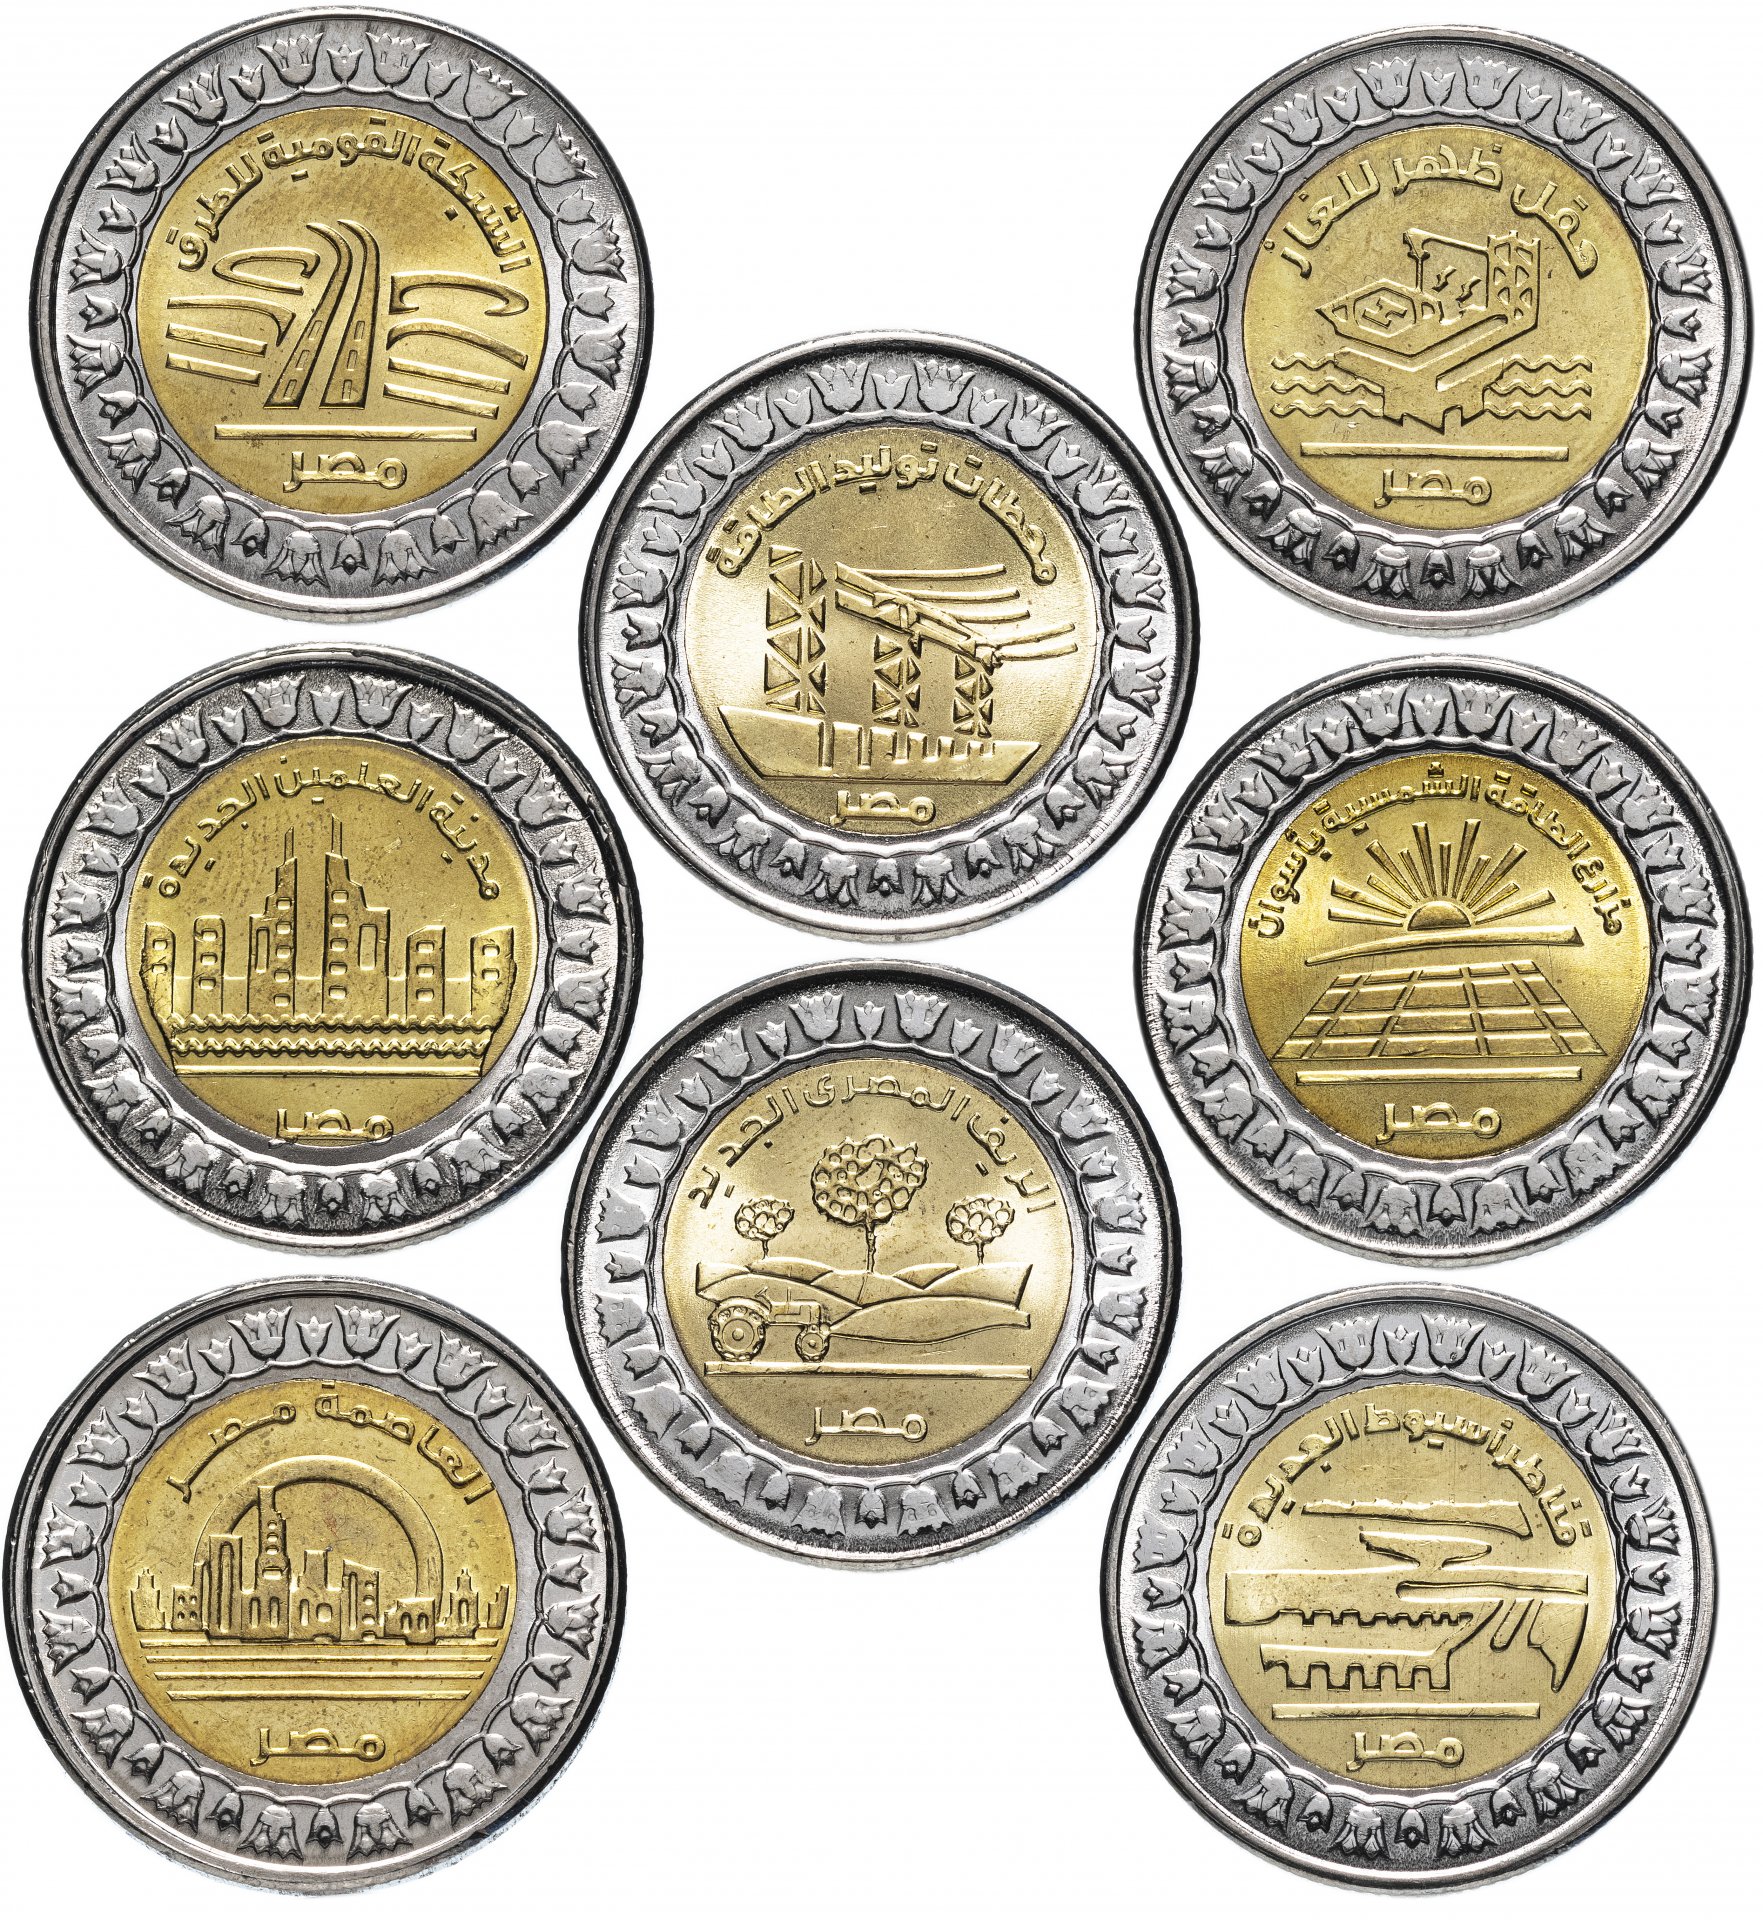 Купить монеты официально. Юбилейные монеты. Юбилейные монеты 10 рублей. Манты юбилейные. Коллекция монет.